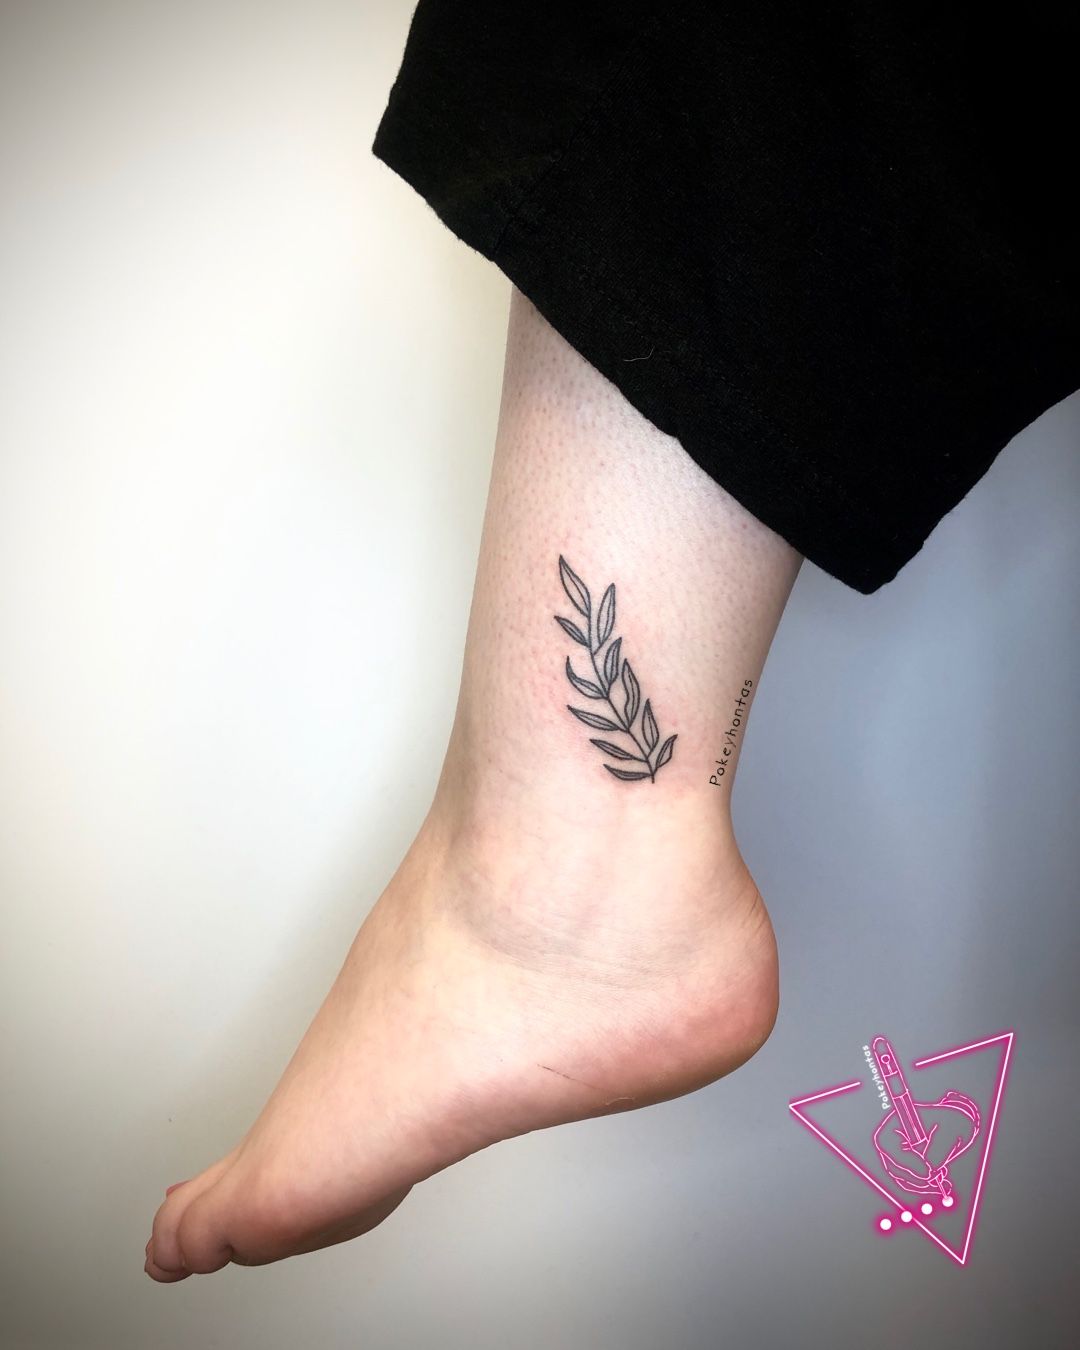 Small fern leaf tattoo on the arm - Tattoogrid.net